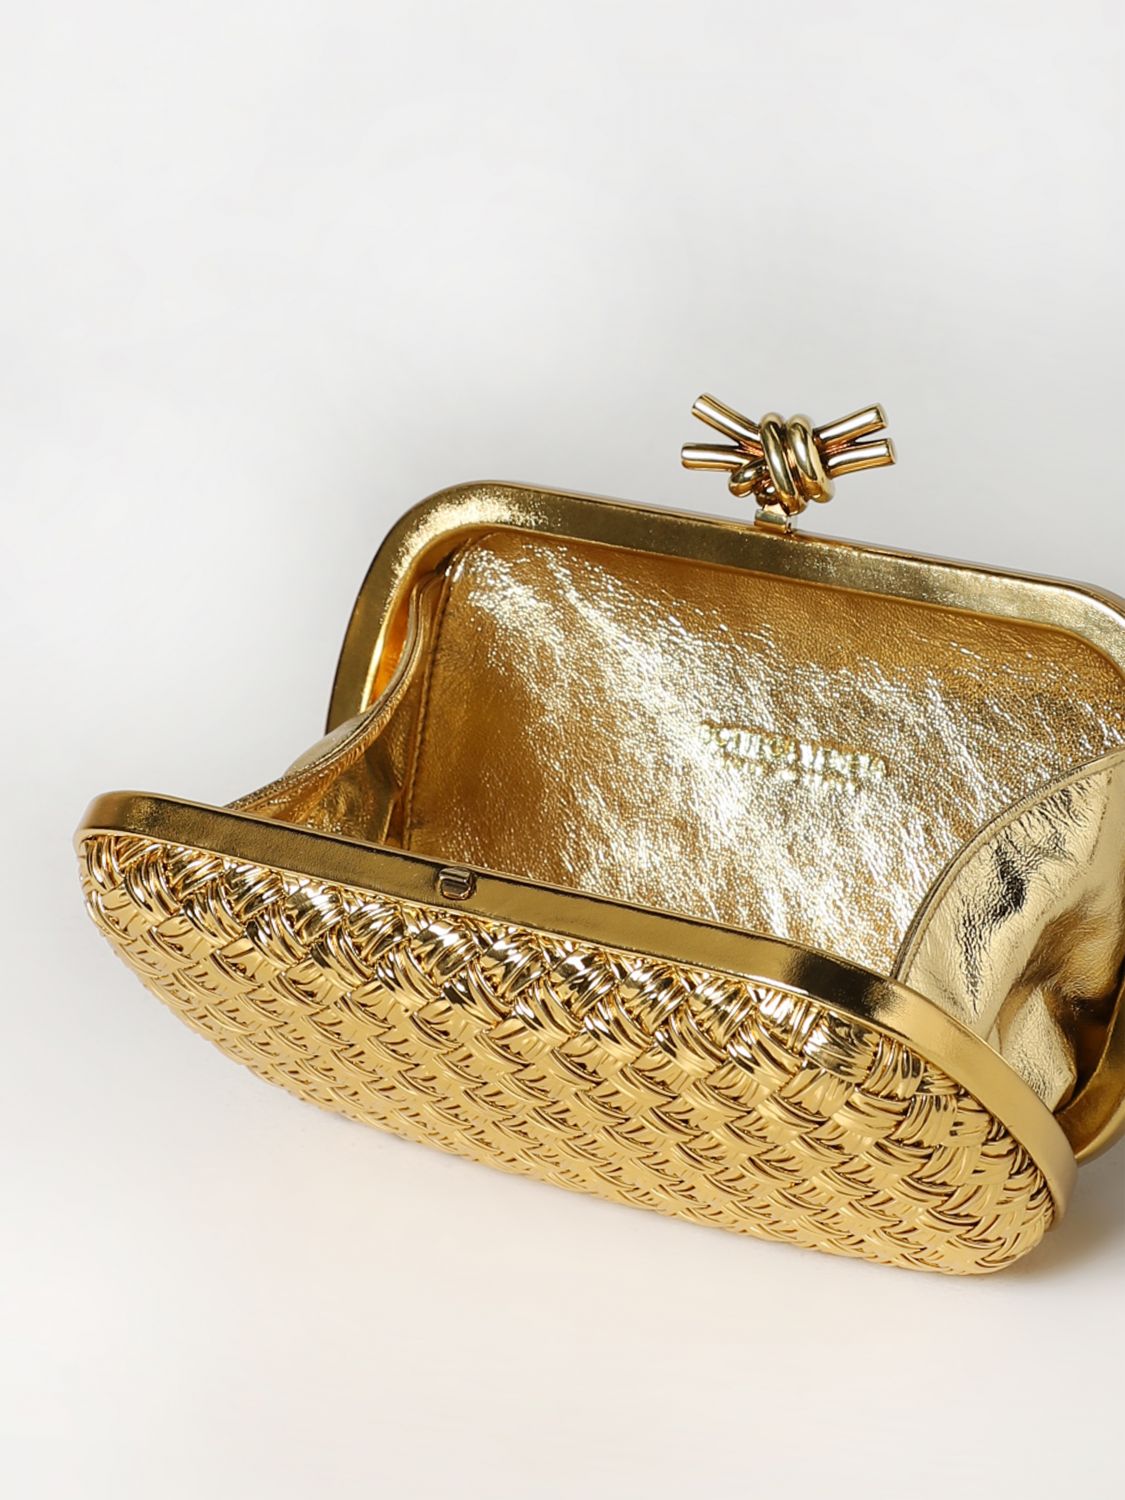 BOTTEGA VENETA: Knot clutch in woven leather - Gold  Bottega Veneta clutch  717622V2OG1 online at